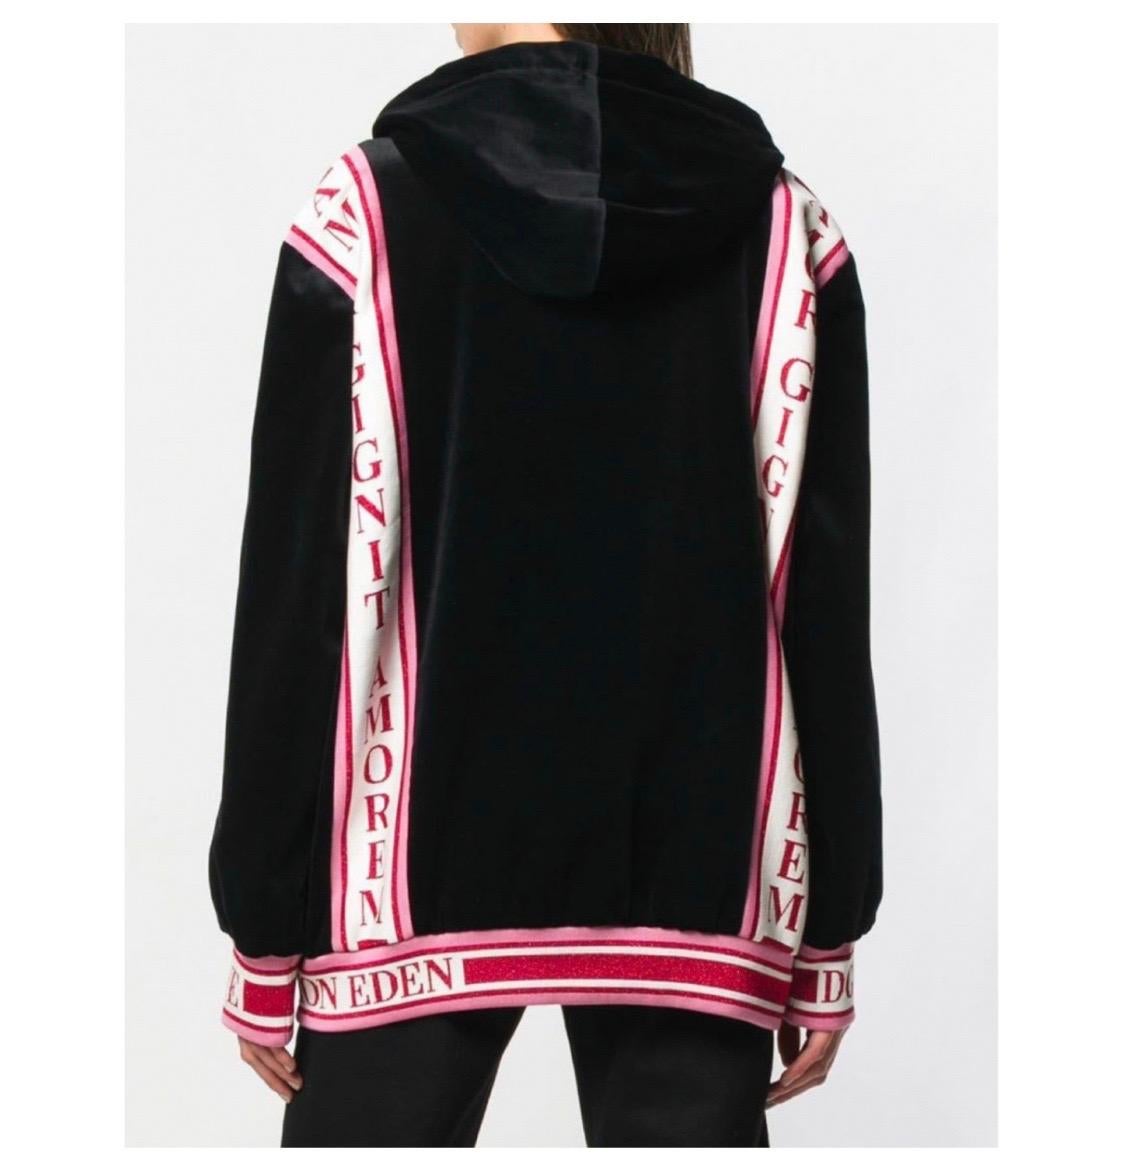 Black Dolce & Gabbana black DG amore hoodie jumper sweatshirt tracksuit top jacket